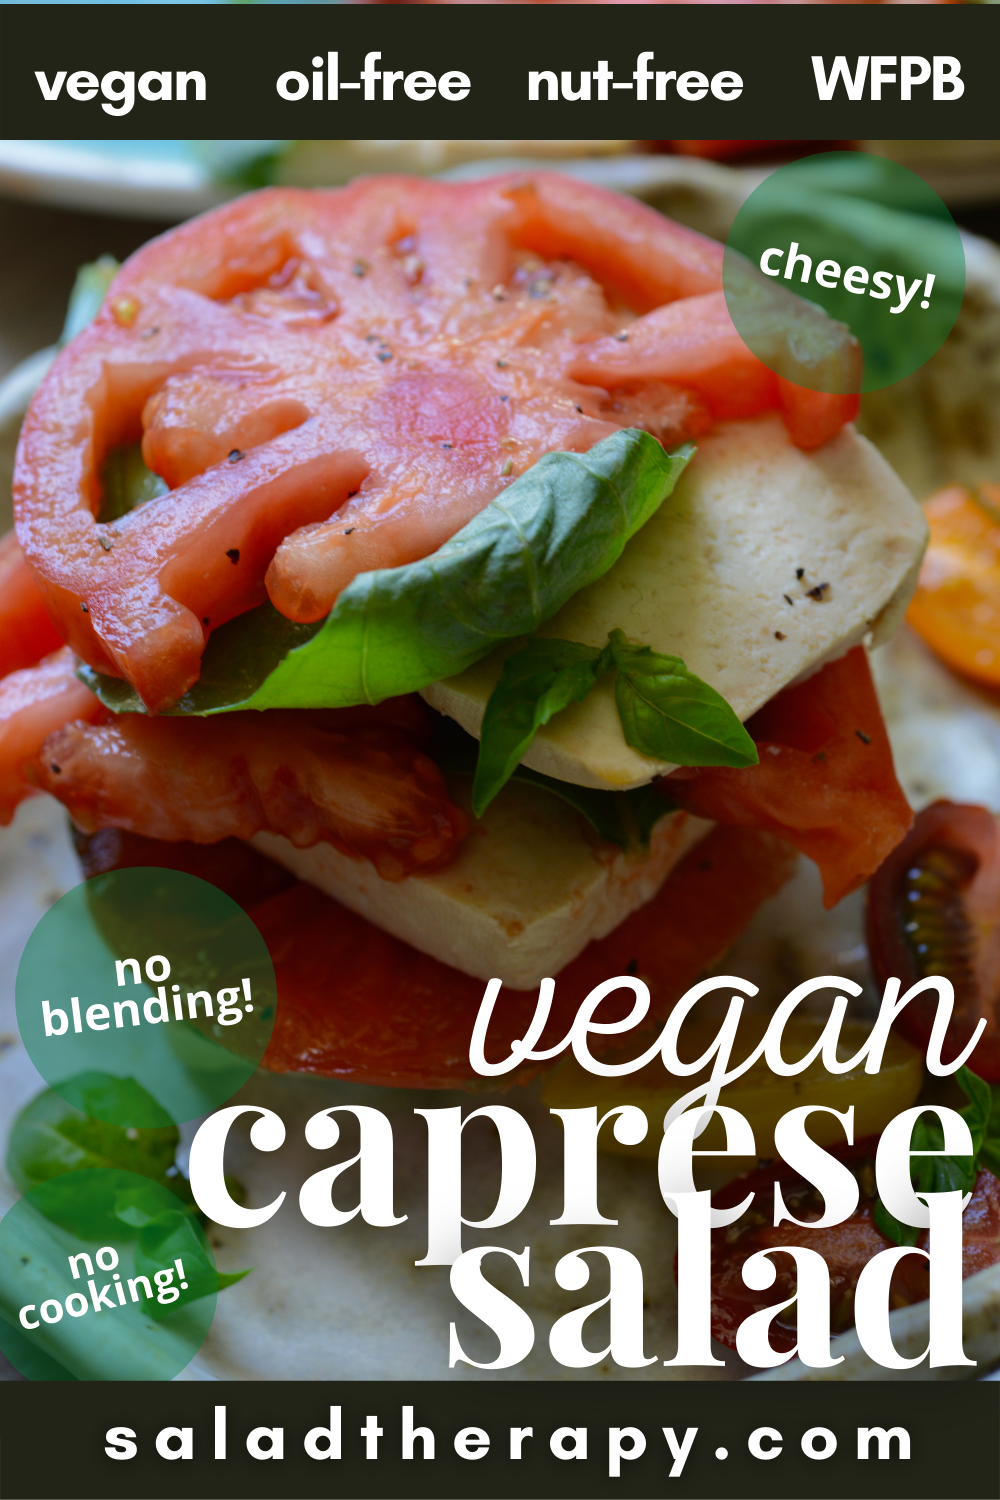 vegan caprese salad closeup pinterest image with text overlay